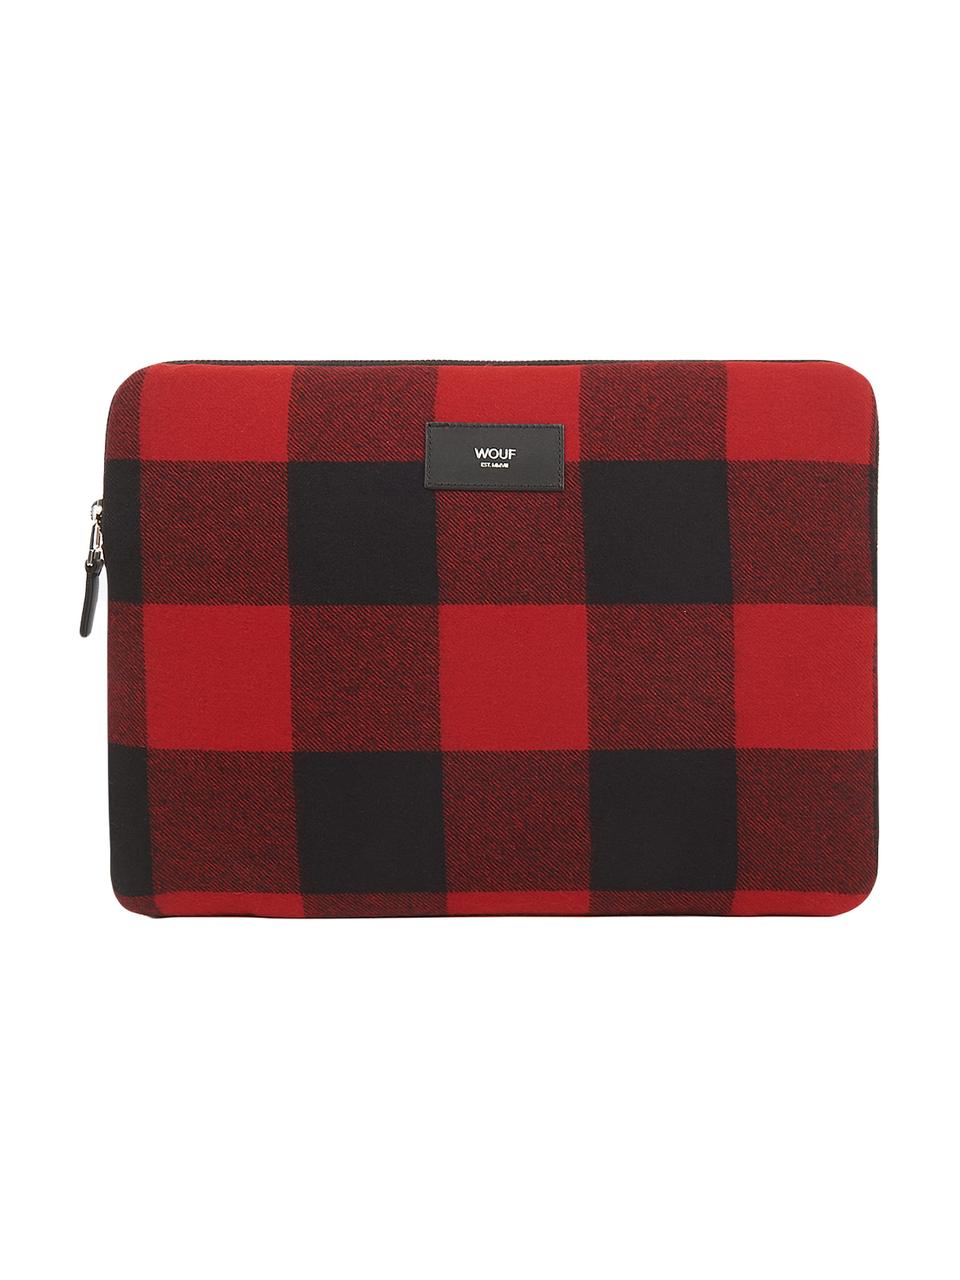 Pokrowiec na MacBook Pro 13 cali Red Jack, Bawełna, skóra, Czerwony, czarny, S 33 x W 23 cm